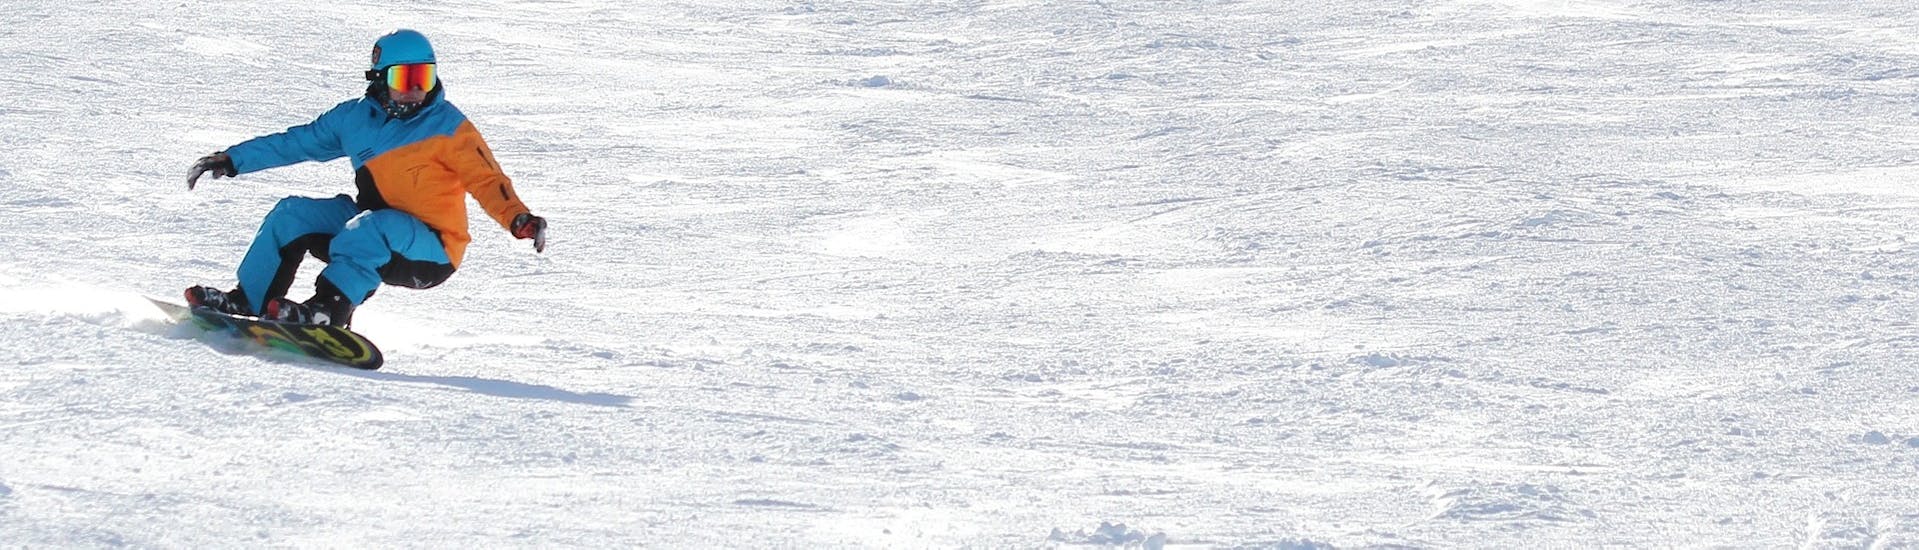 Ein Snowboarder flitzt die Piste hinunter beim Snowboardkurs für Kinder & Erwachsene mit Erfahrung mit Ski-fun in Flumserberg.